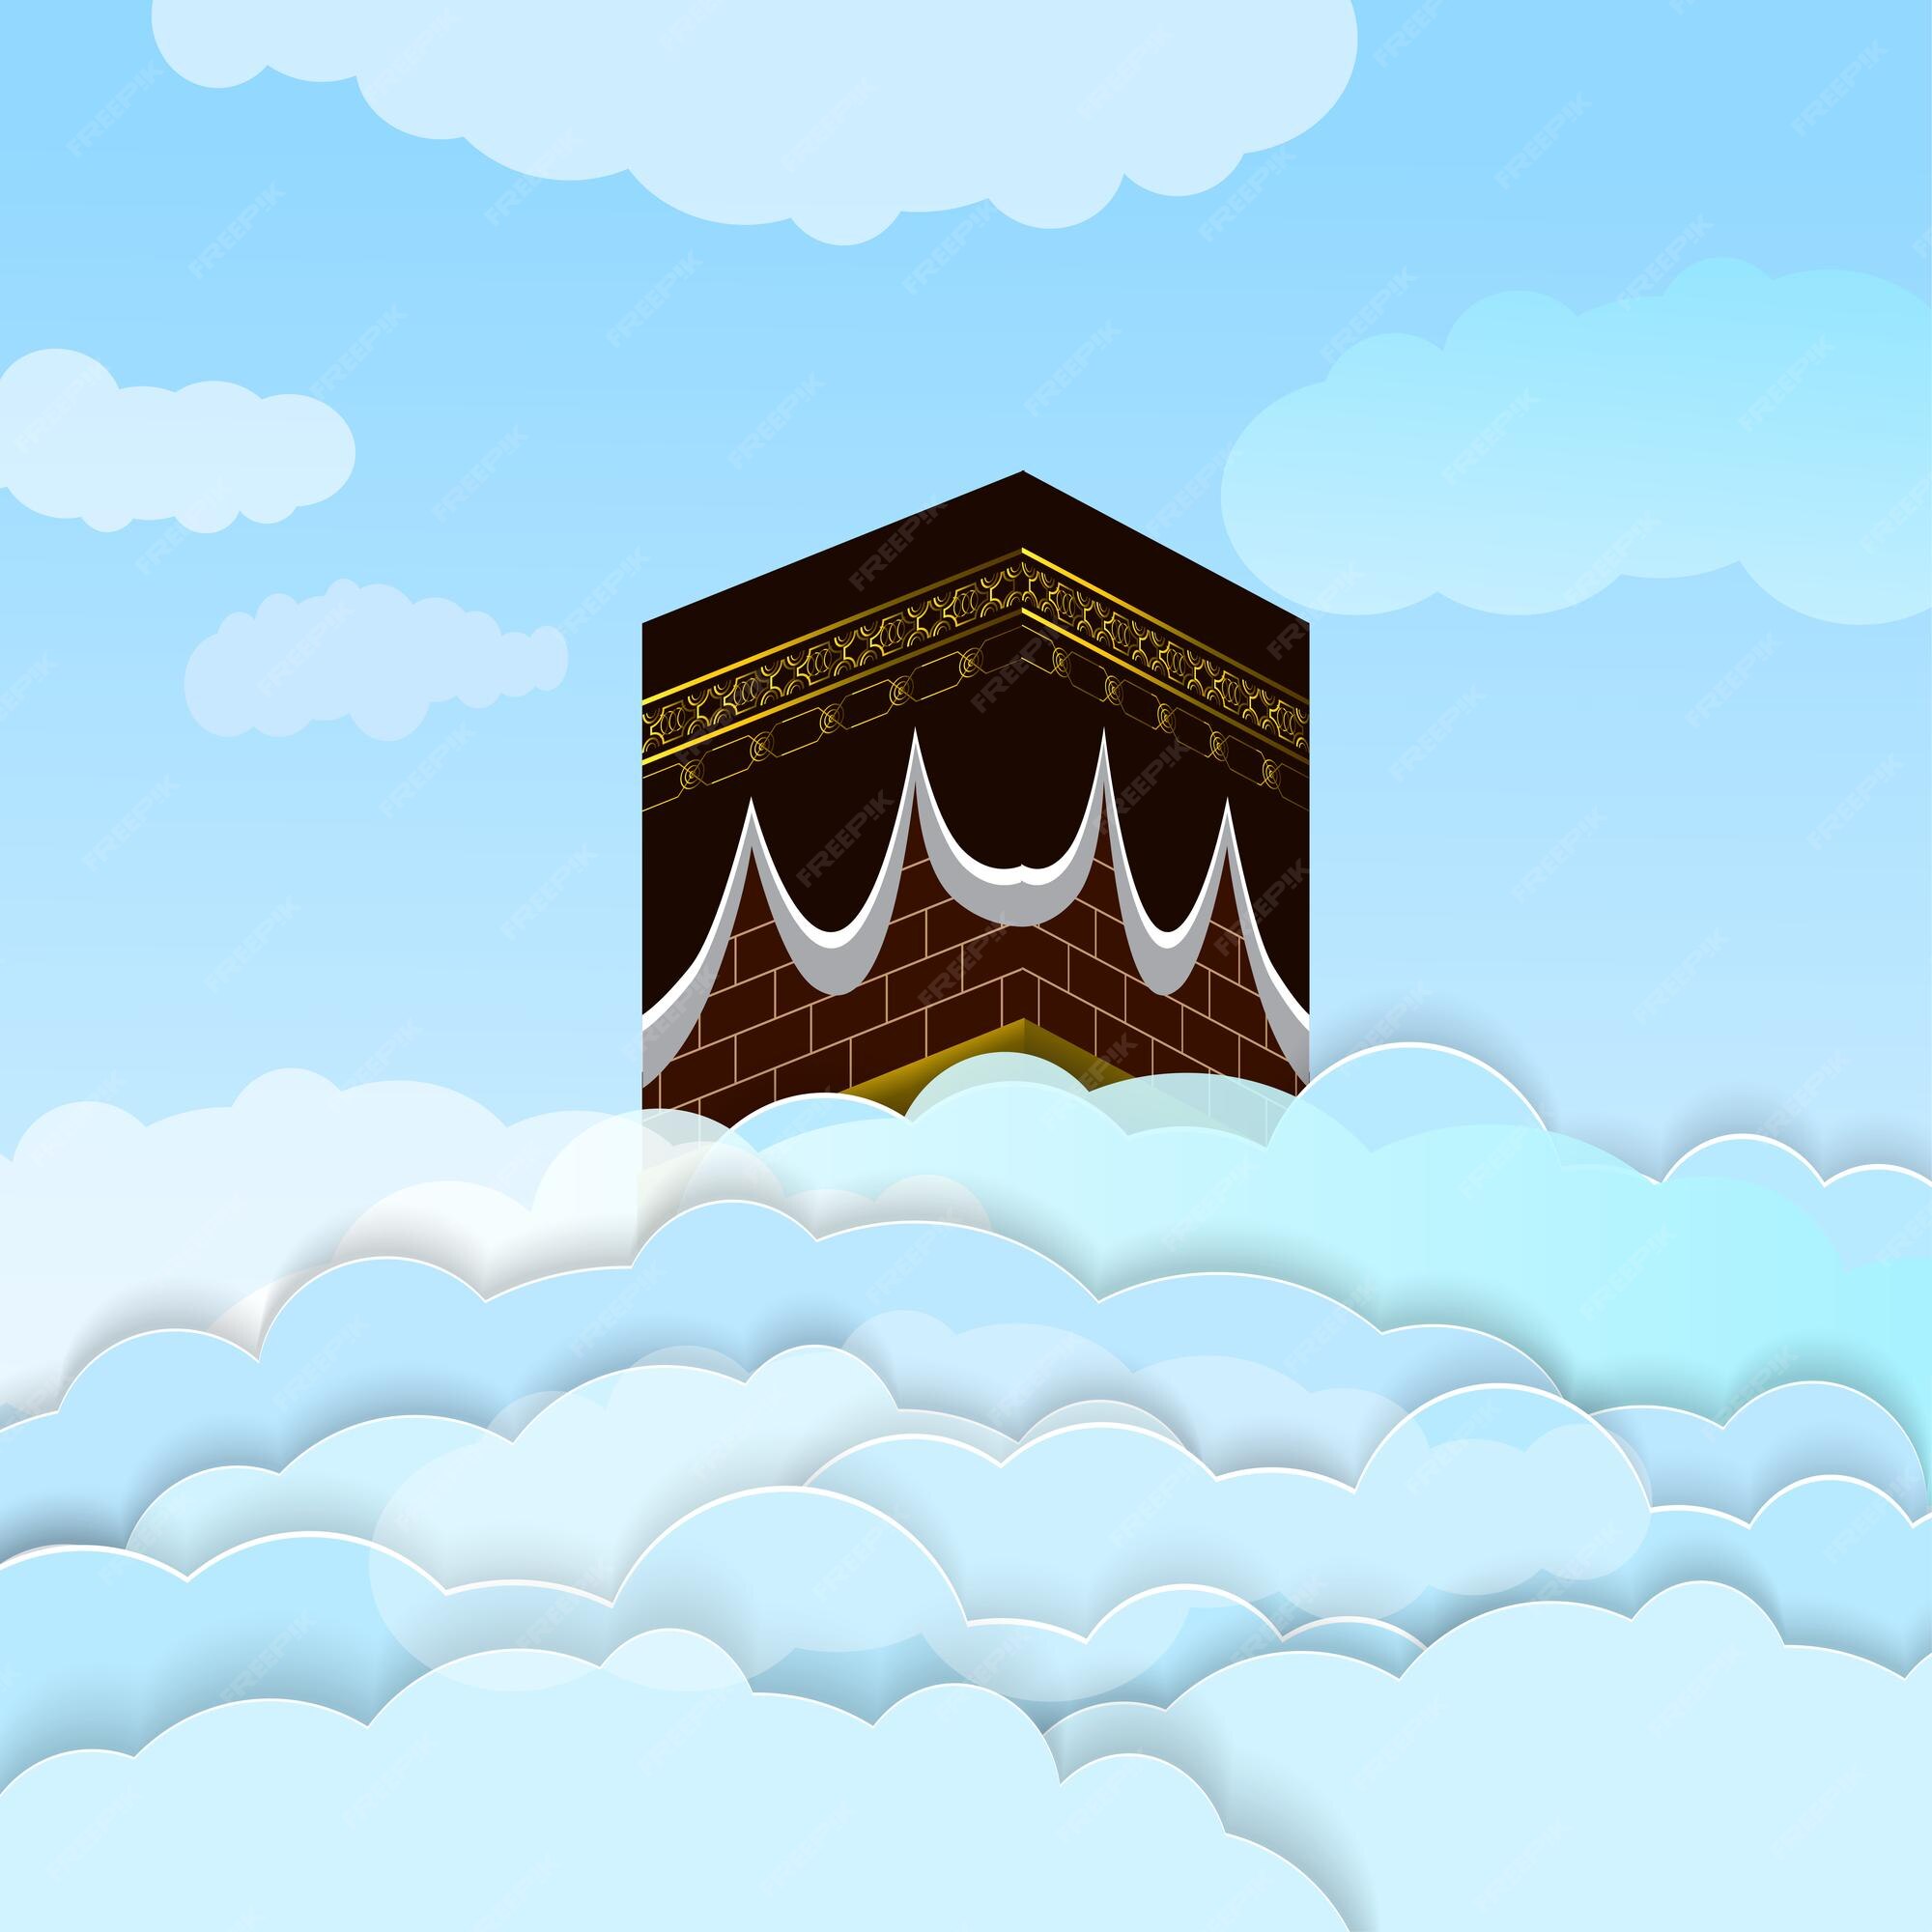 Mekkah Vectors & Illustrations for Free Download | Freepik